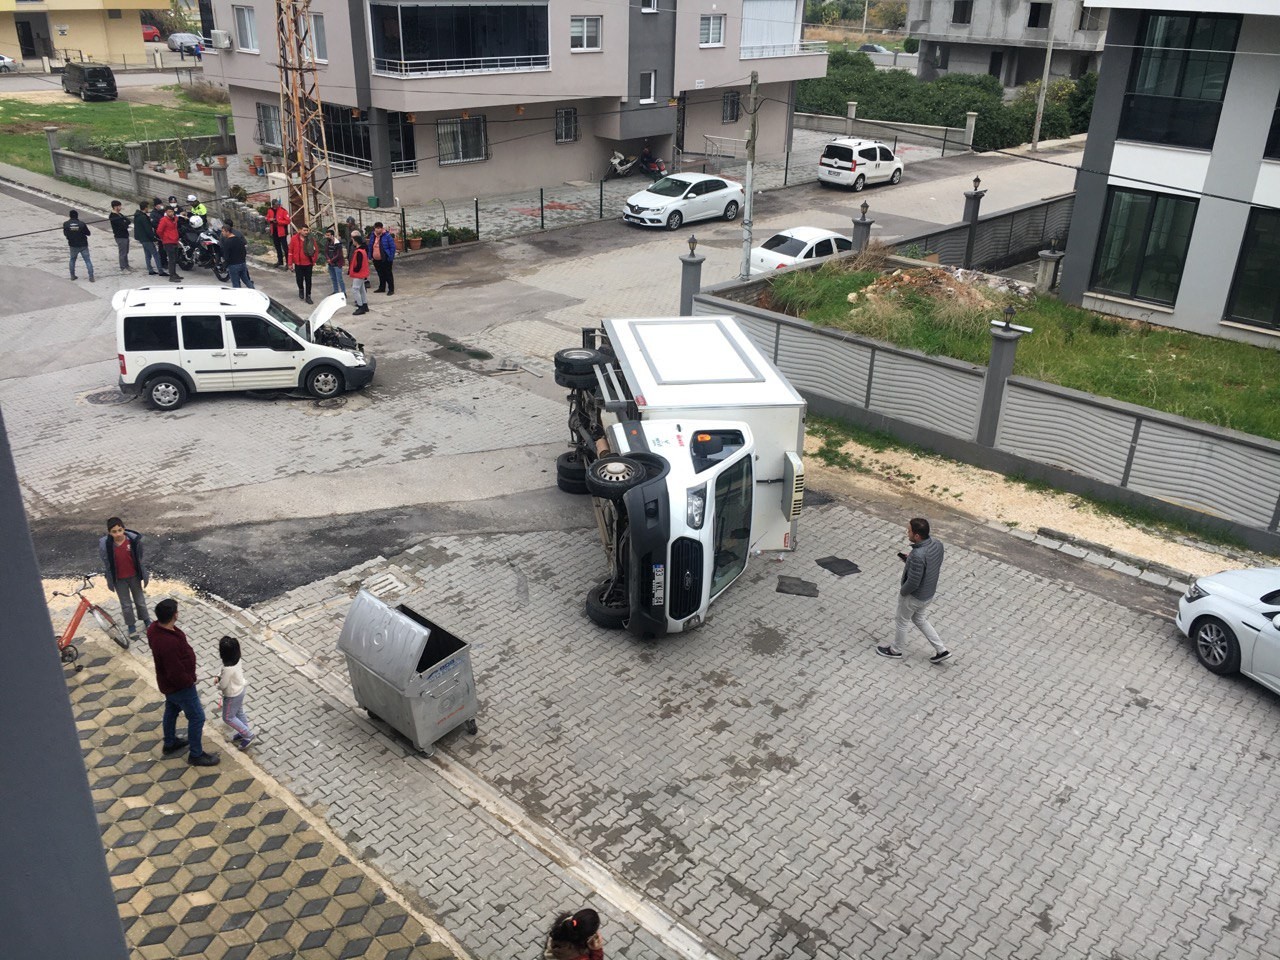 Araçla çarpışan kamyonet devrildi, sürücüler yara almadan kurtuldu #mersin